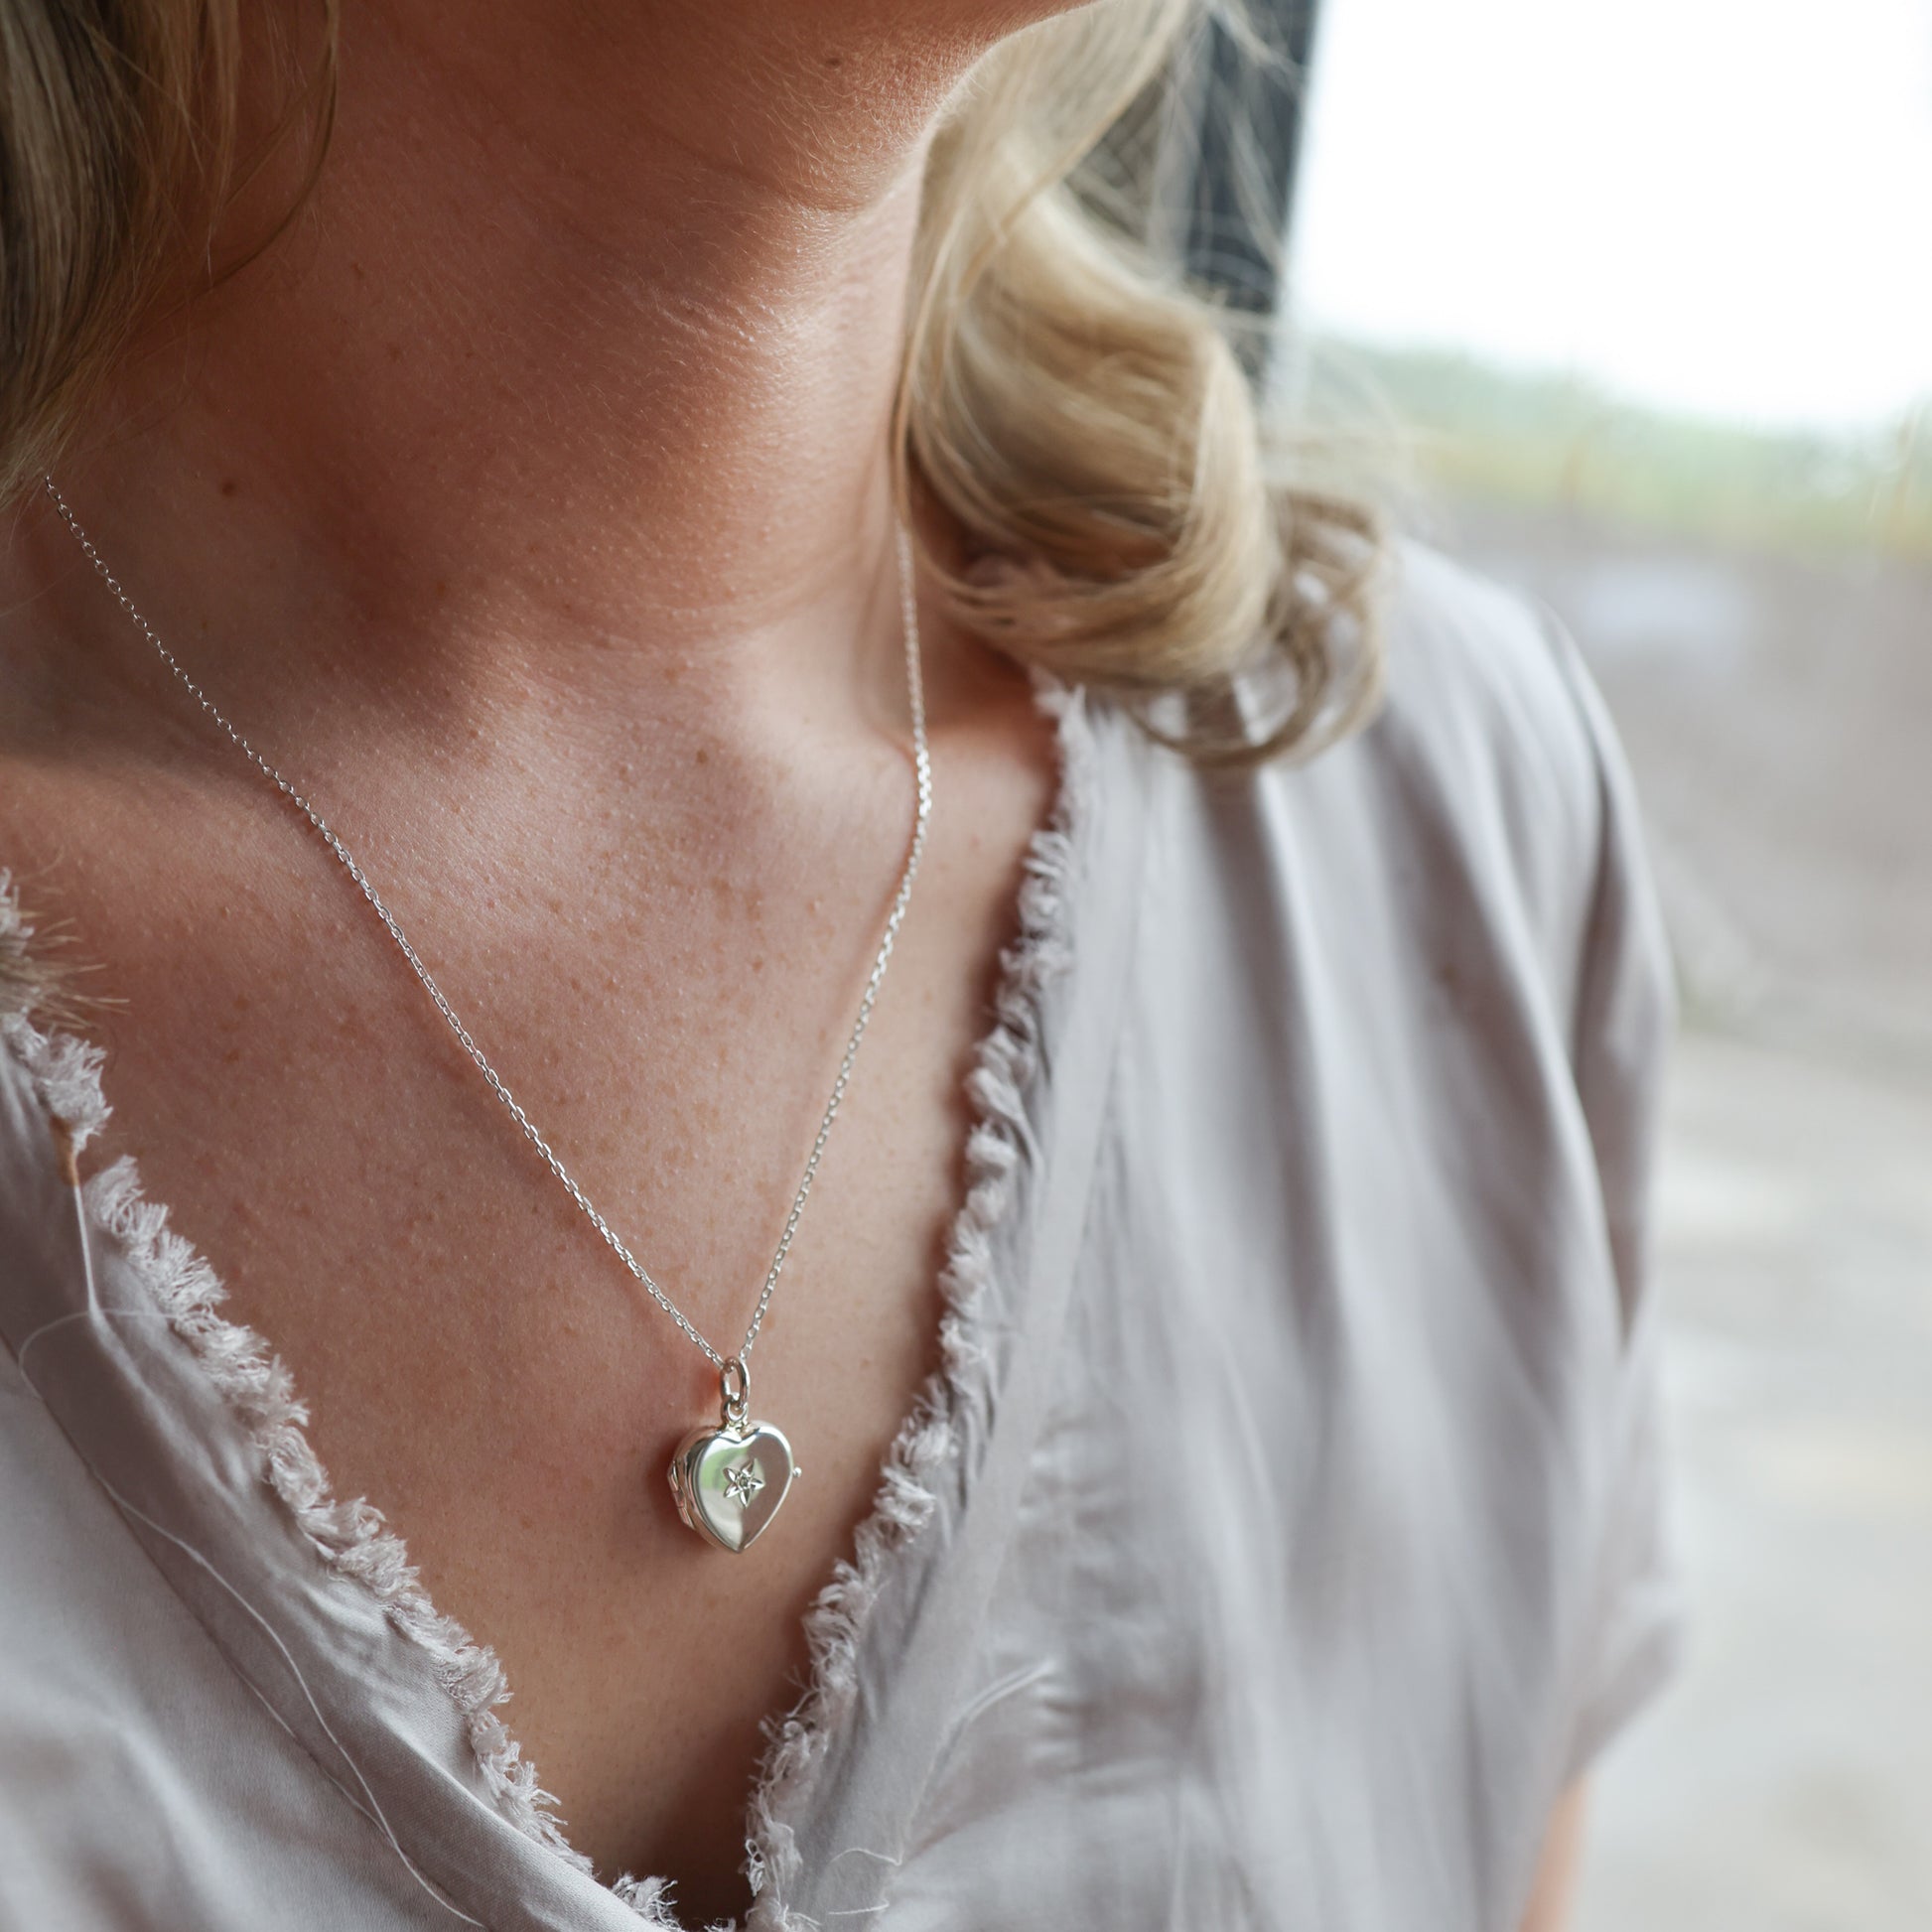 Model wearing heart shaped locket with diamond. Wearing a grey top.